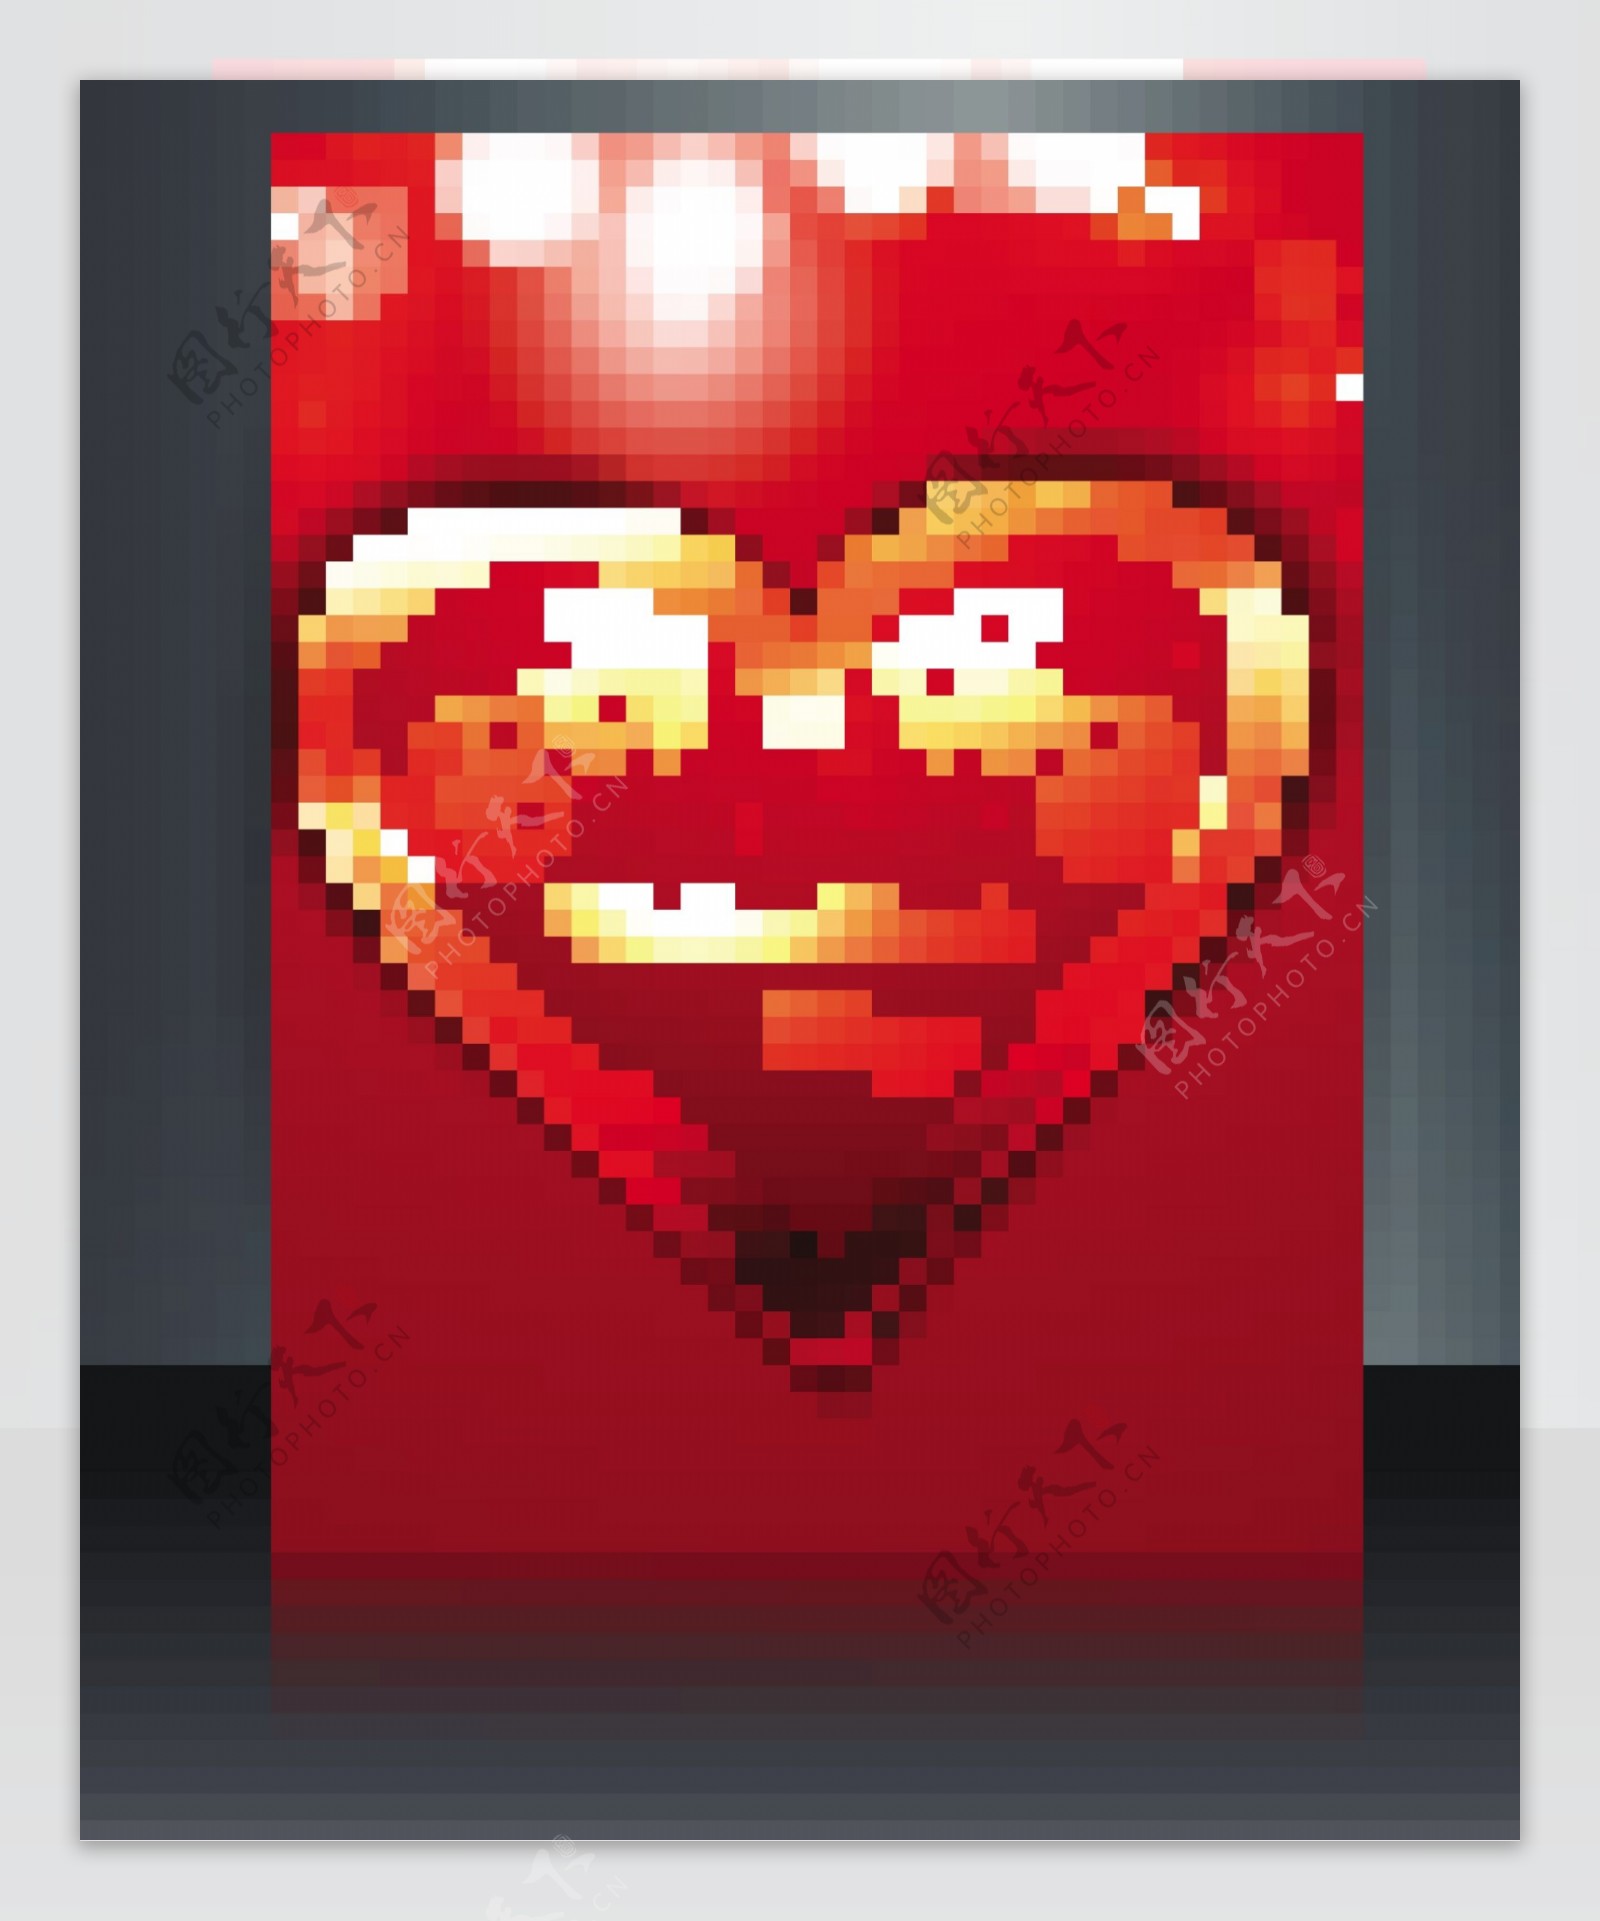 矢量插图情人节手册模板心脏彩色背景